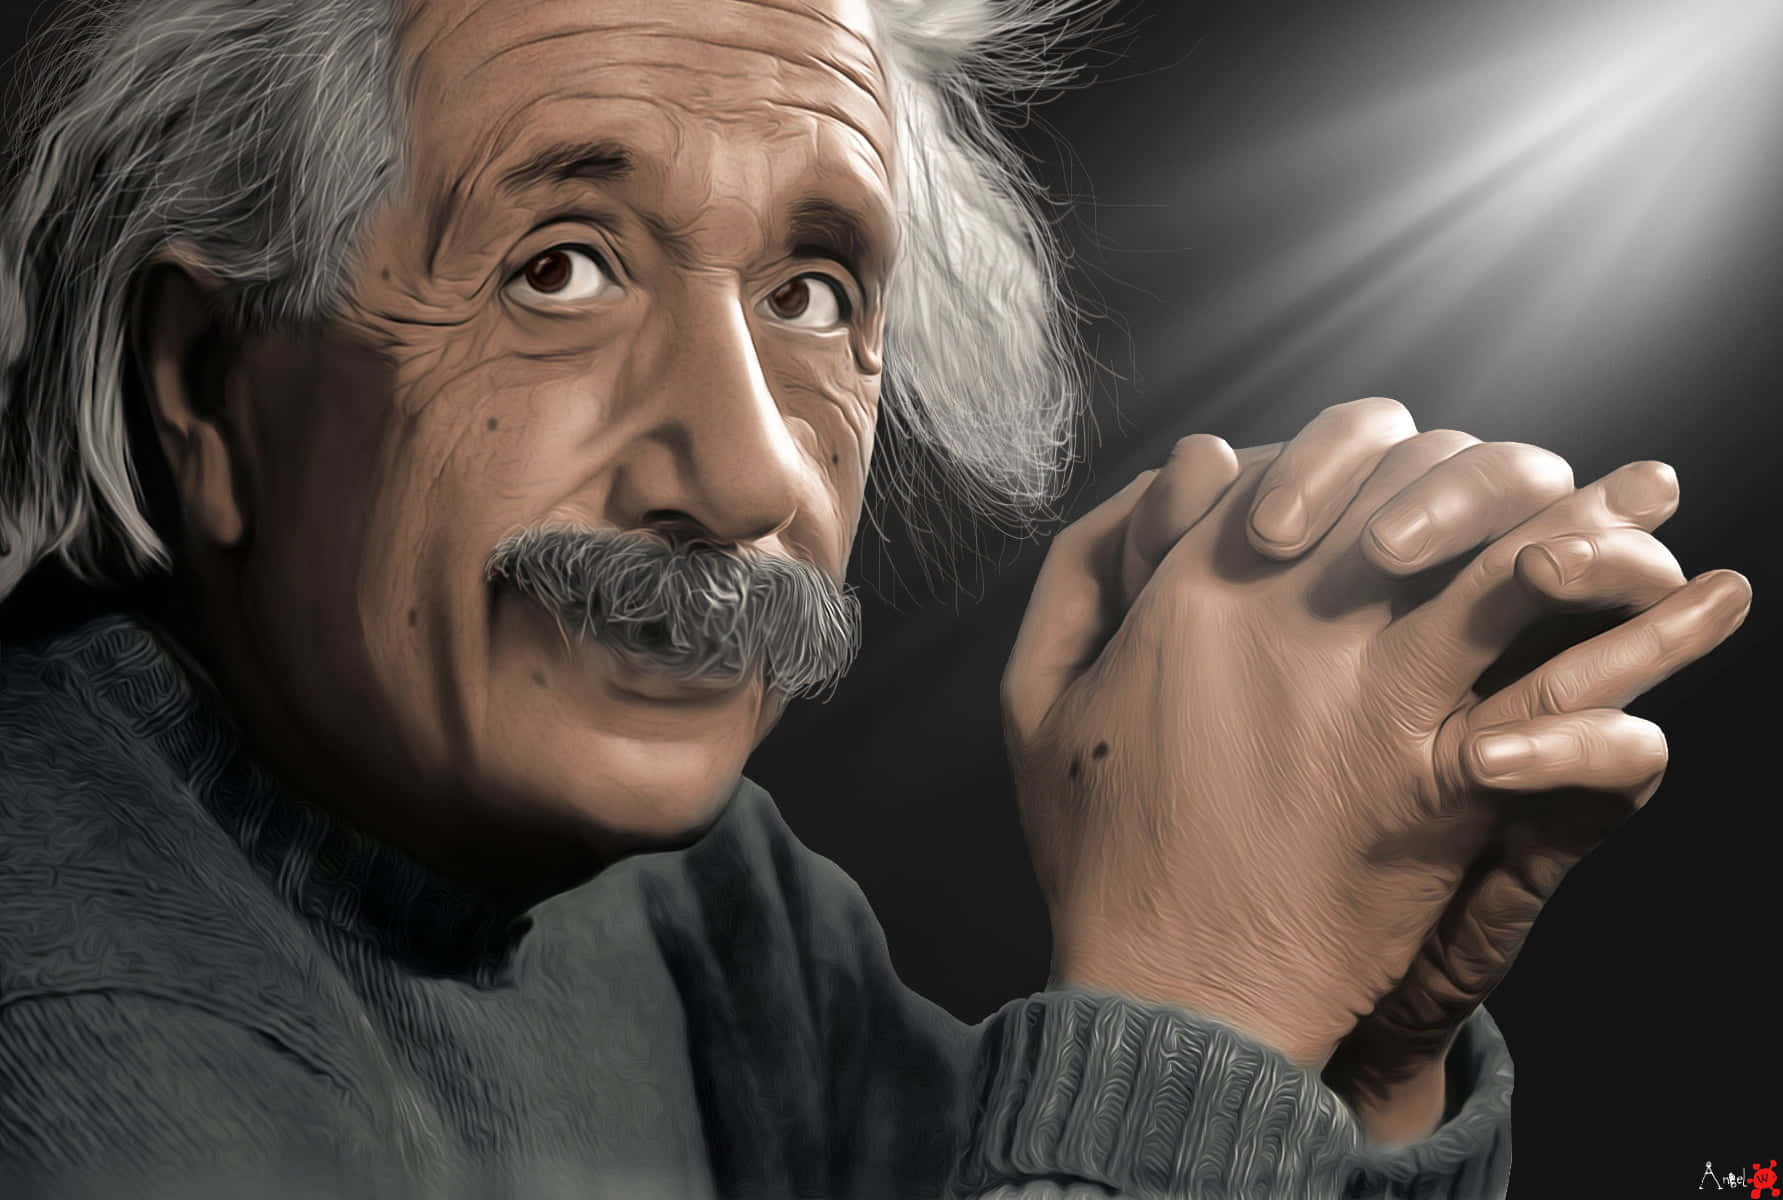 Albert Einstein - A Portrait Of The Scientist